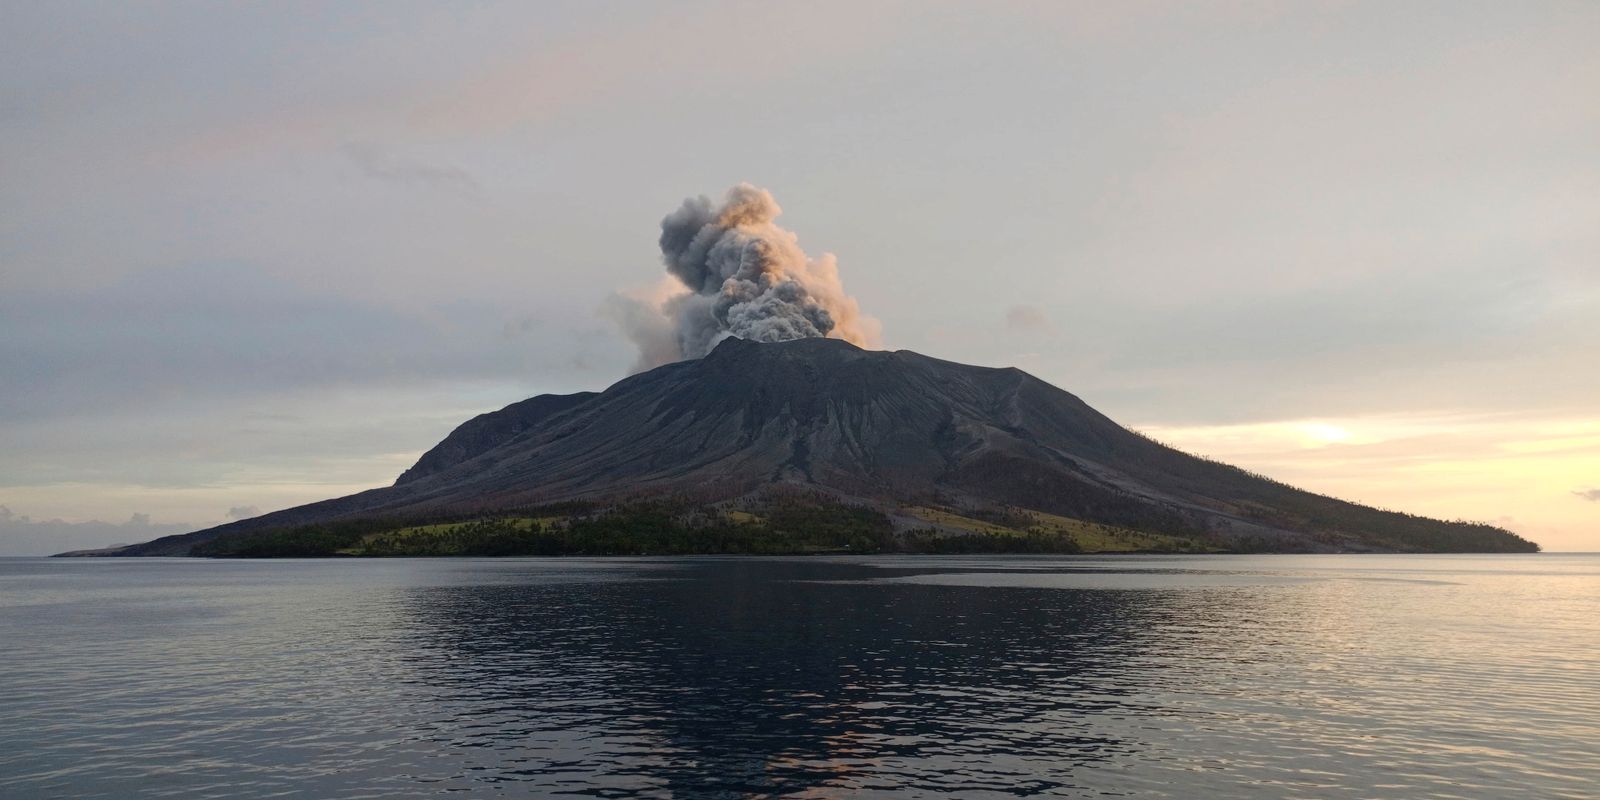 varning: indonesisk vulkan nära ”explosiva utbrott”